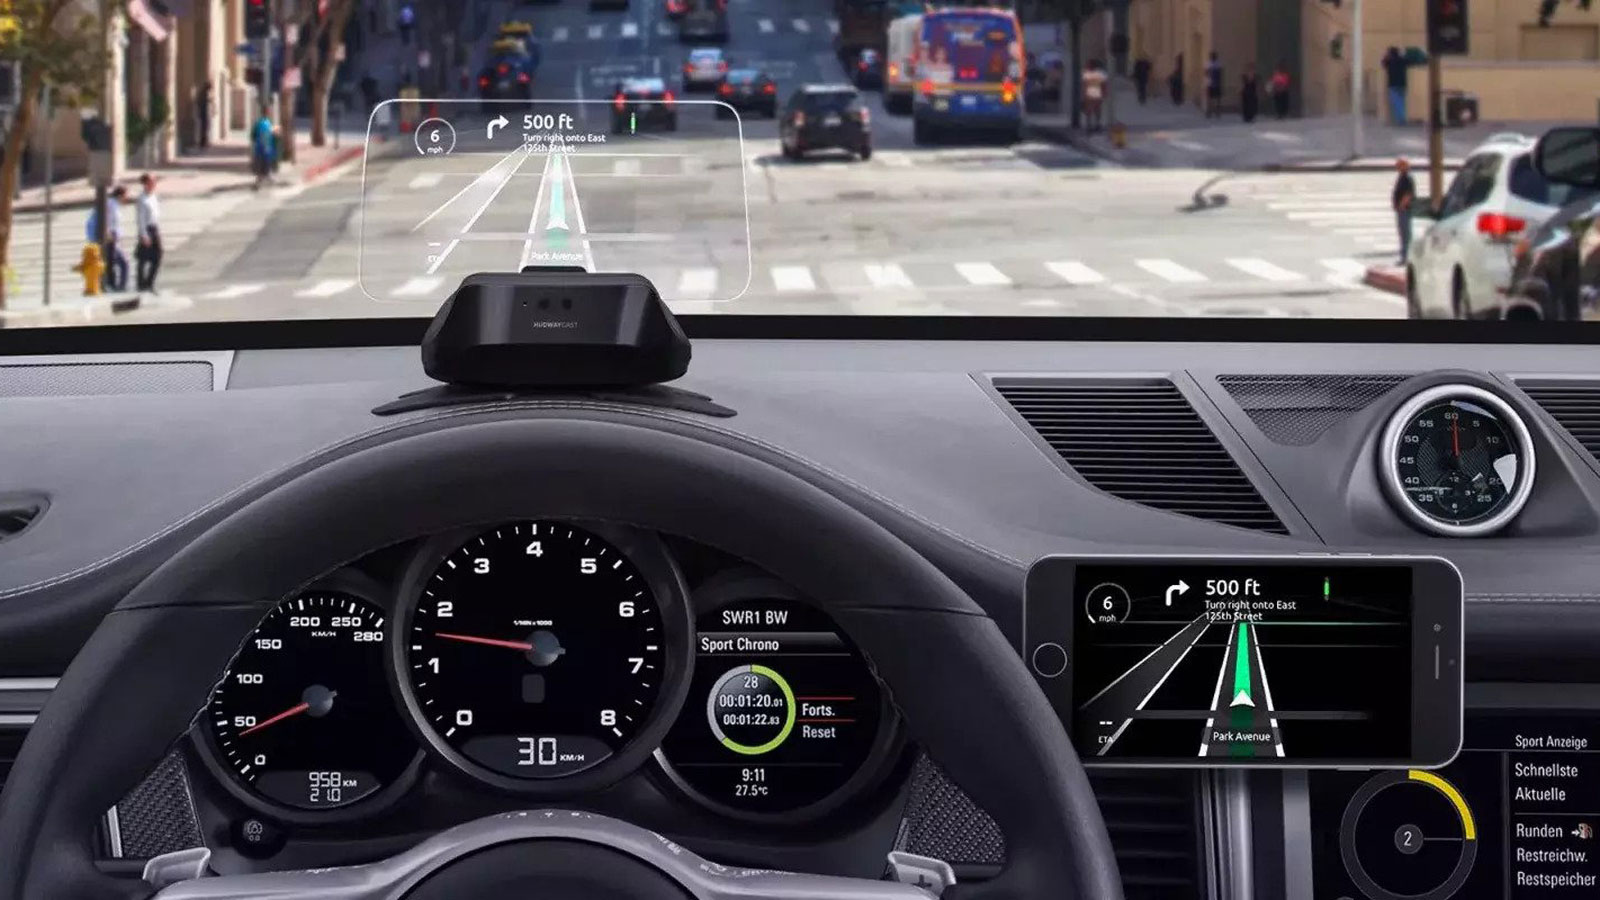 Πώς τα gadgets του αυτοκινήτου διευκολύνουν την οδήγηση